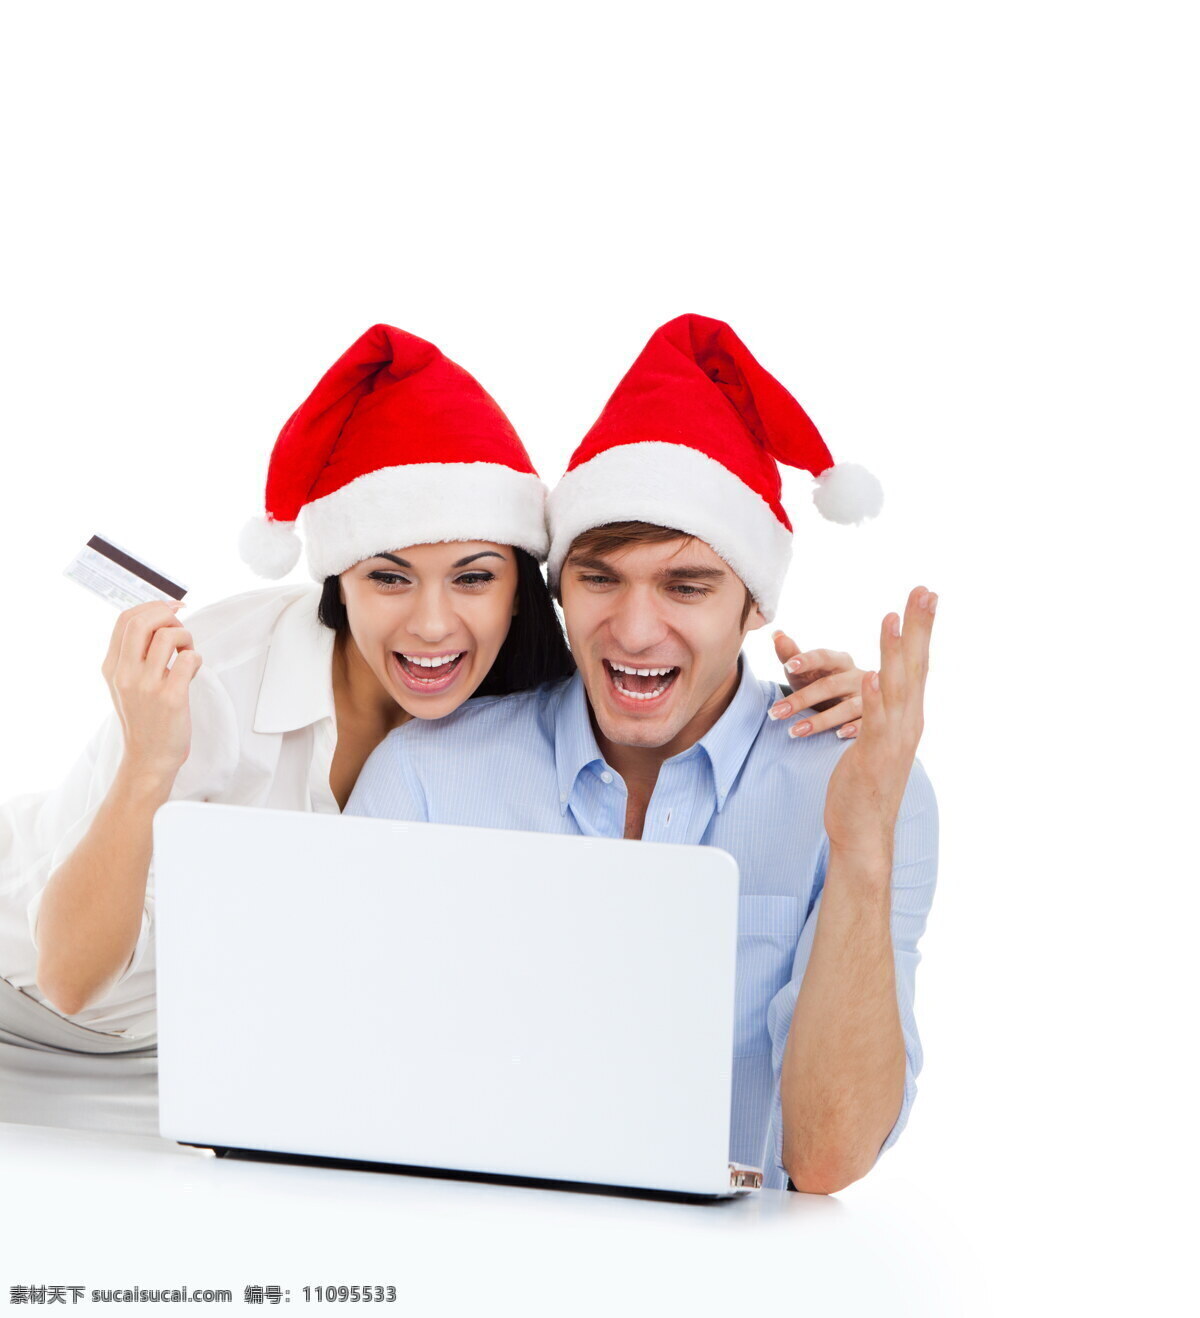 圣诞节 购物 人物 圣诞帽 笔记本 电脑 夫妻 情侣 男人 女人 圣诞节素材 节日素材 生活人物 人物摄影 人物图片